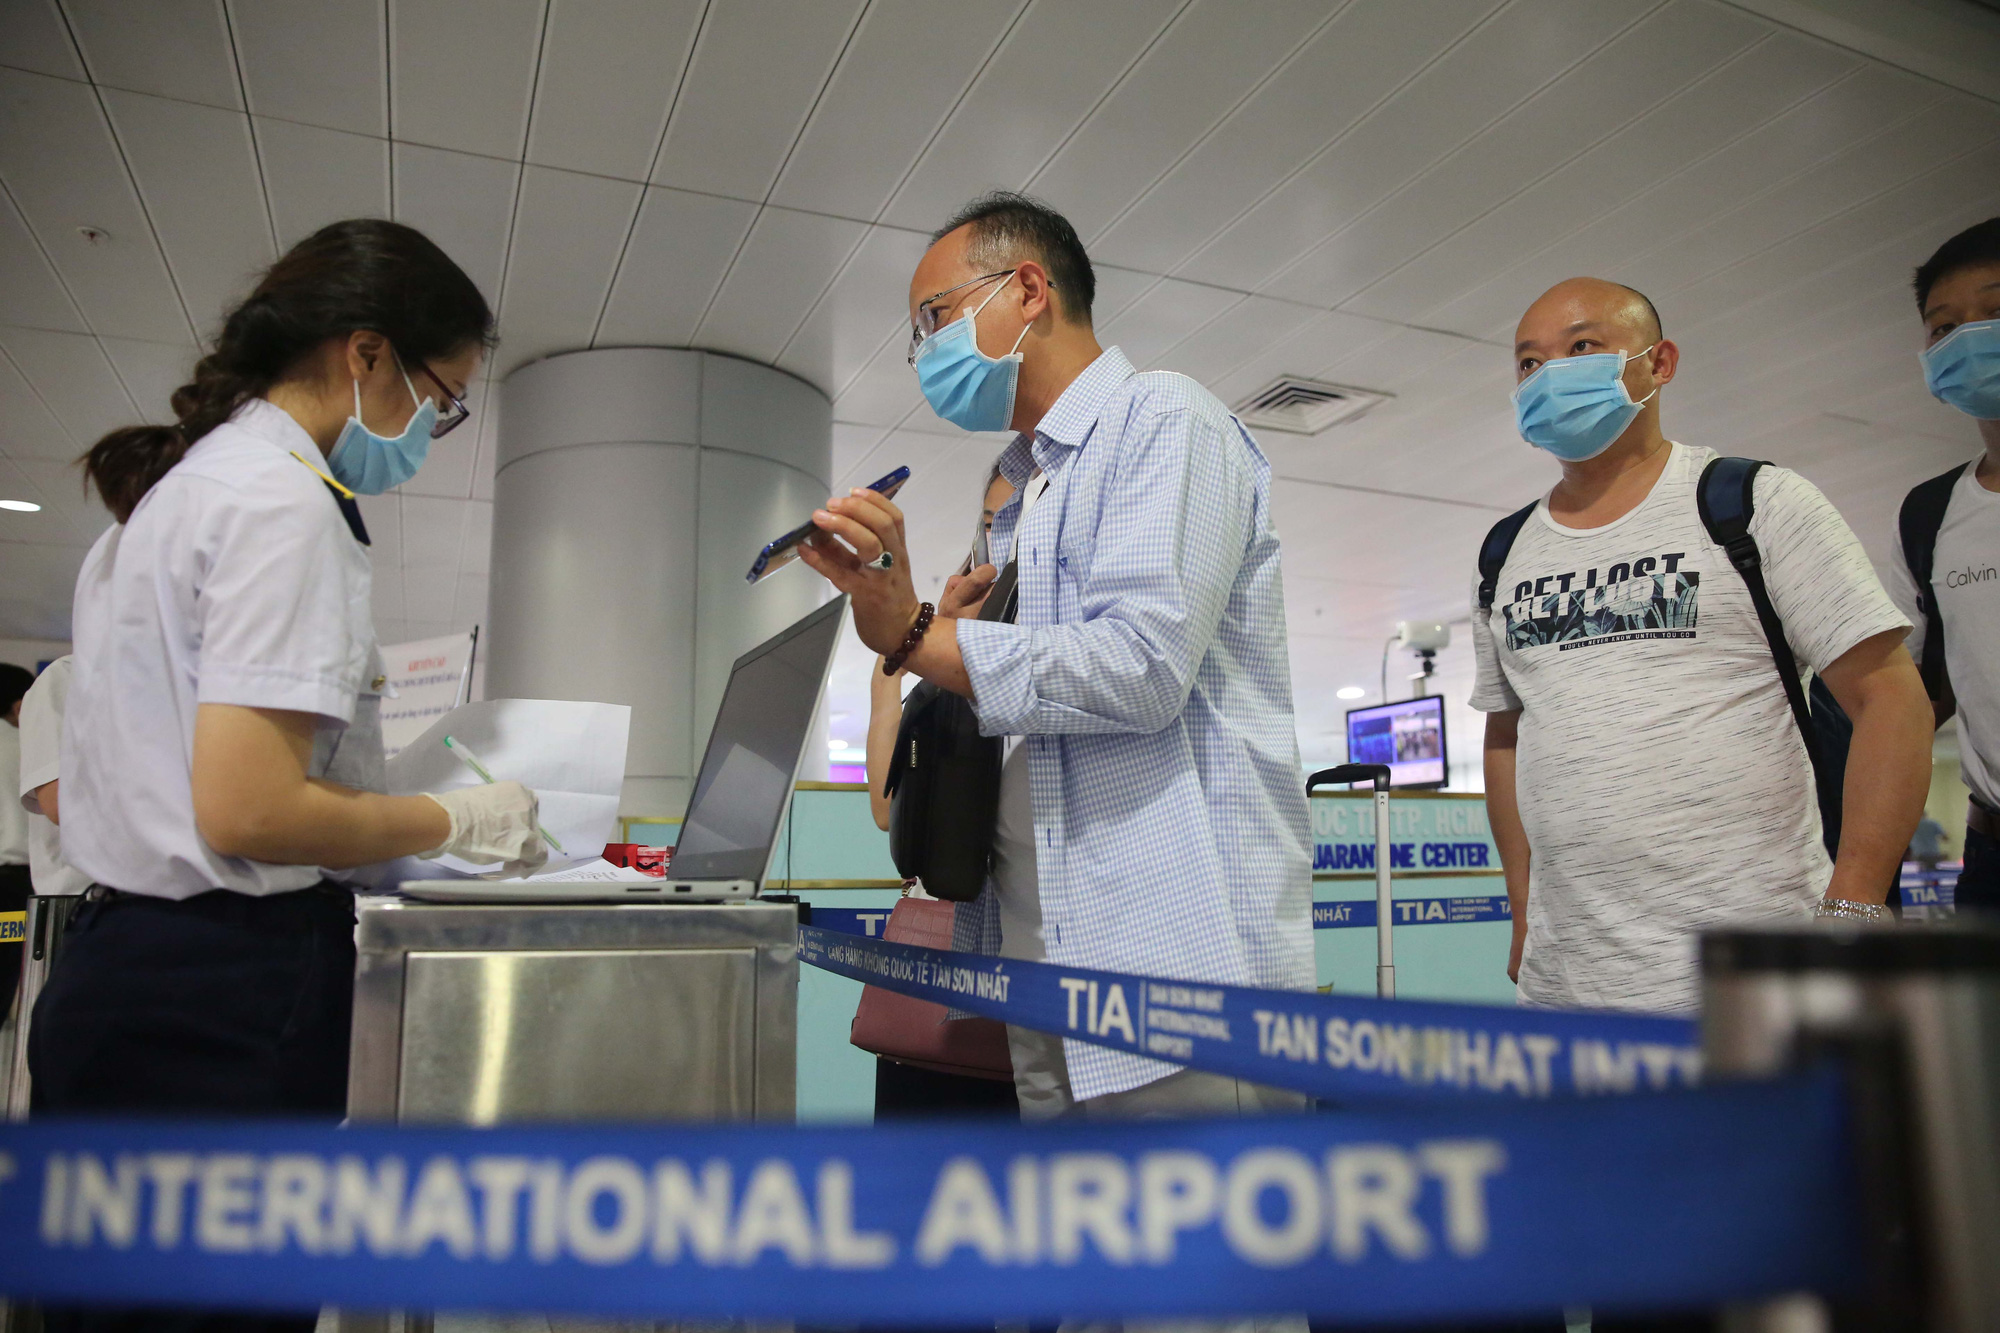 VIDEO: Cận cảnh quy trình khai báo y tế bắt buộc ở Sân bay Tân Sơn Nhất - Ảnh 3.